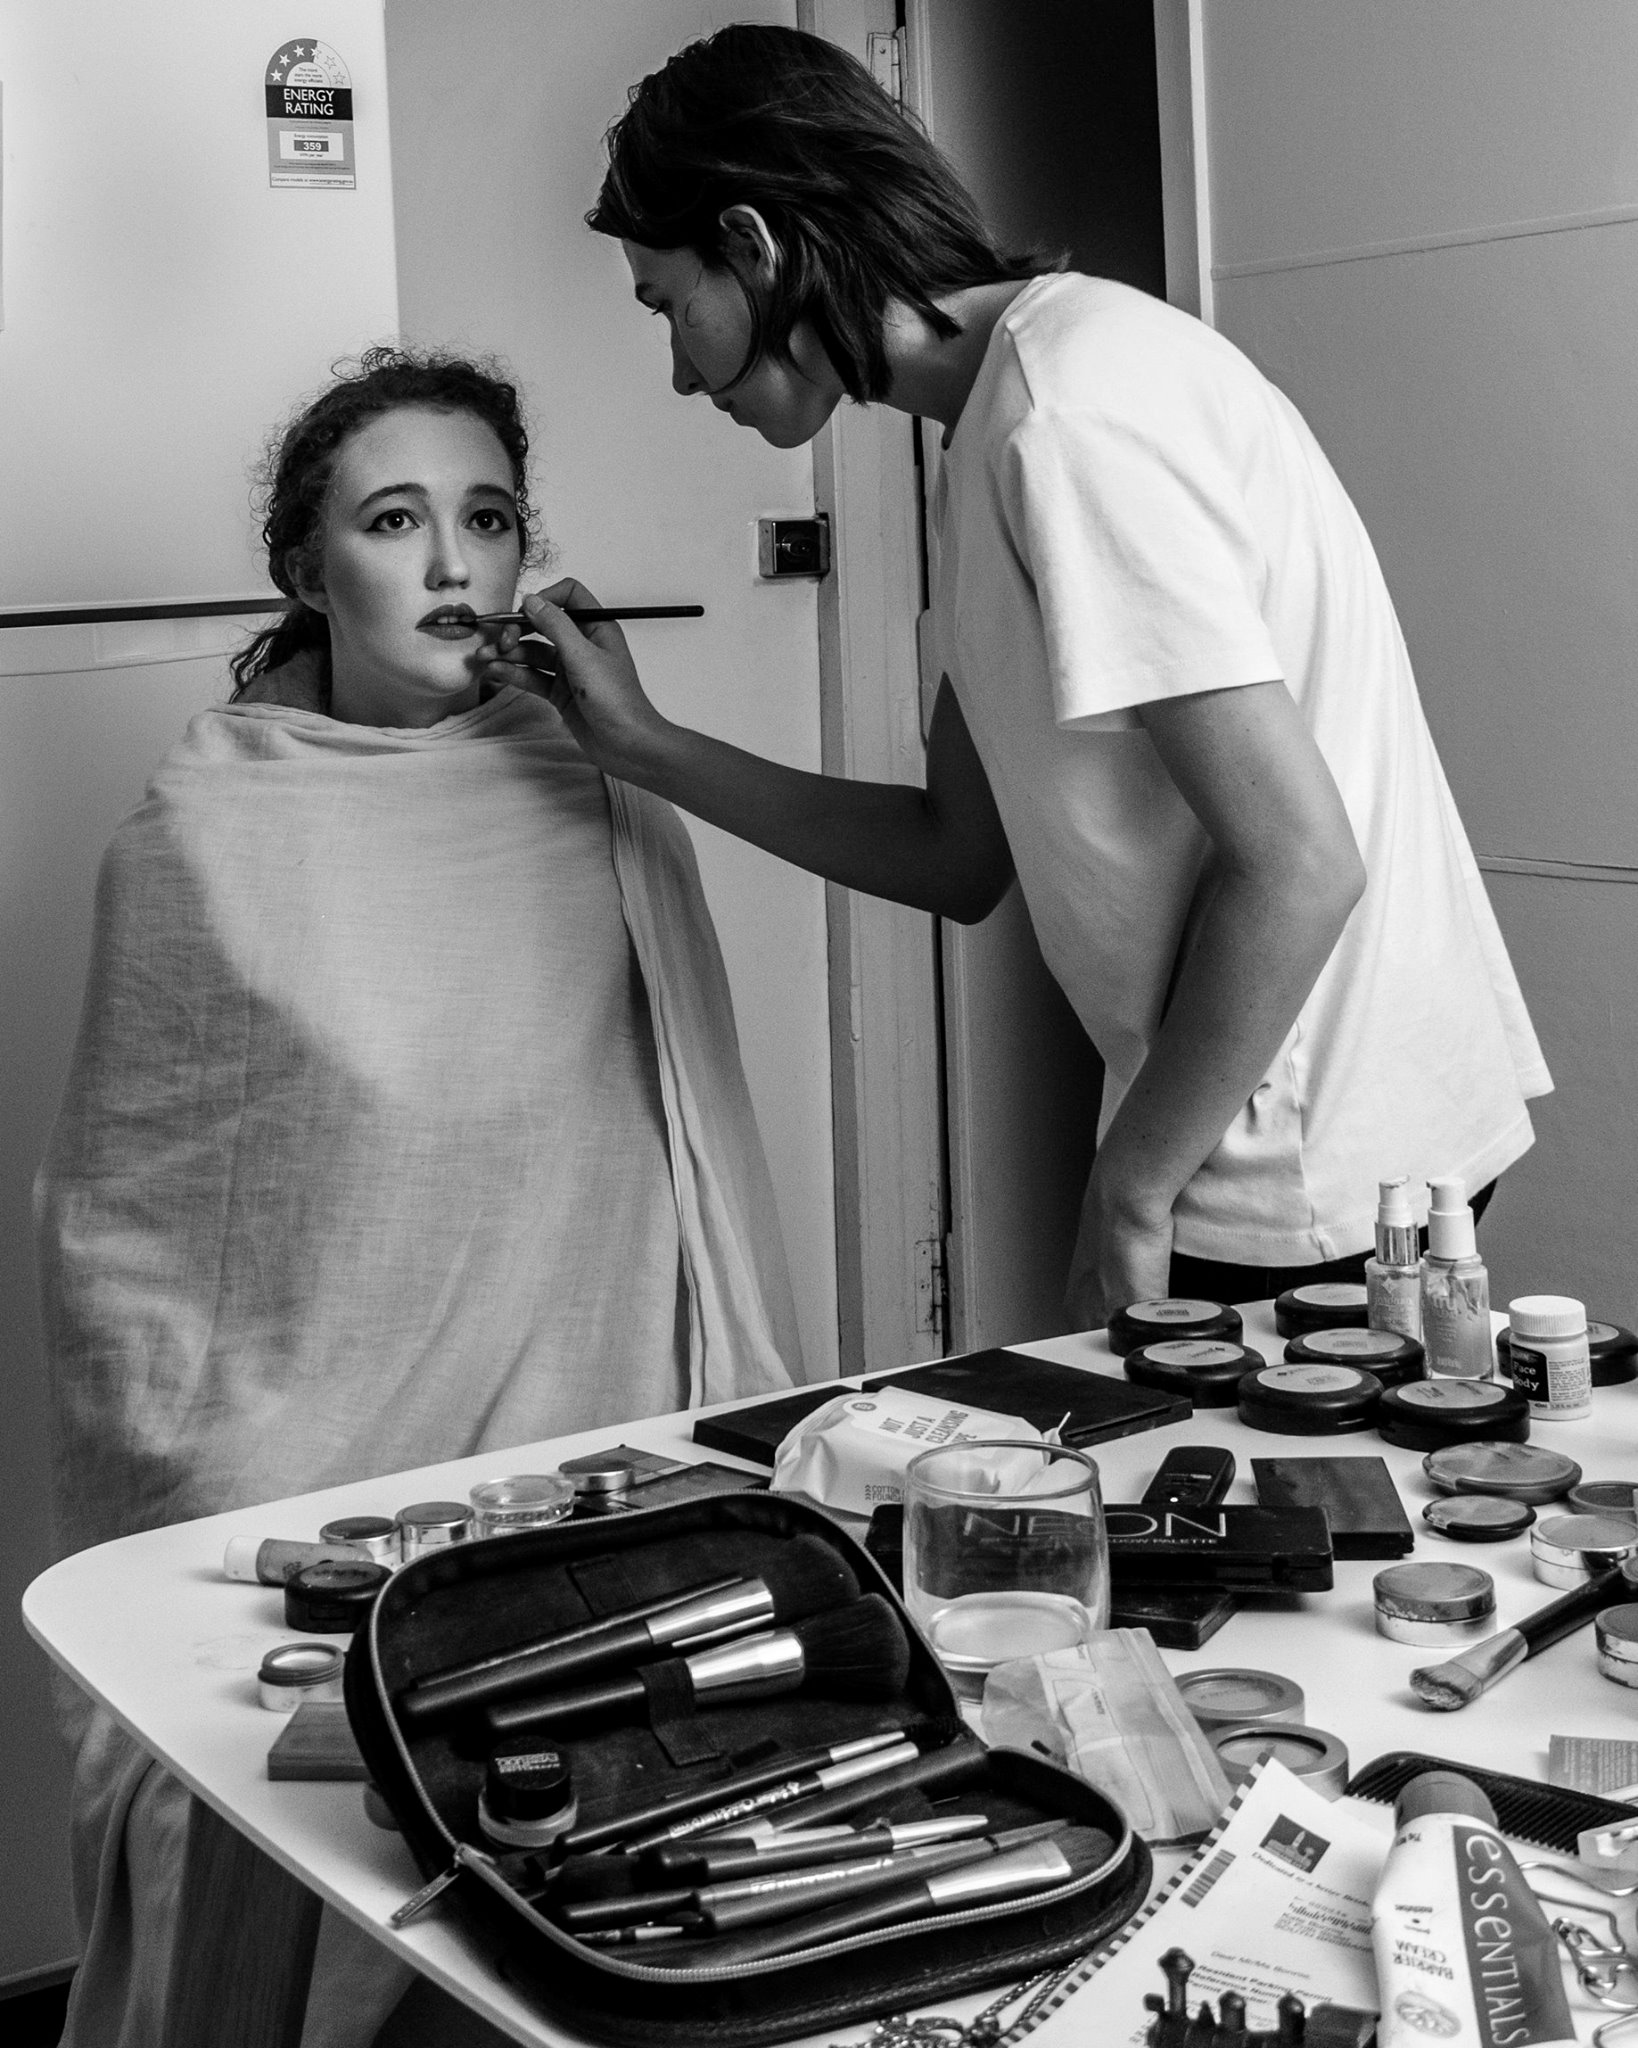 Applying Sarah's makeup